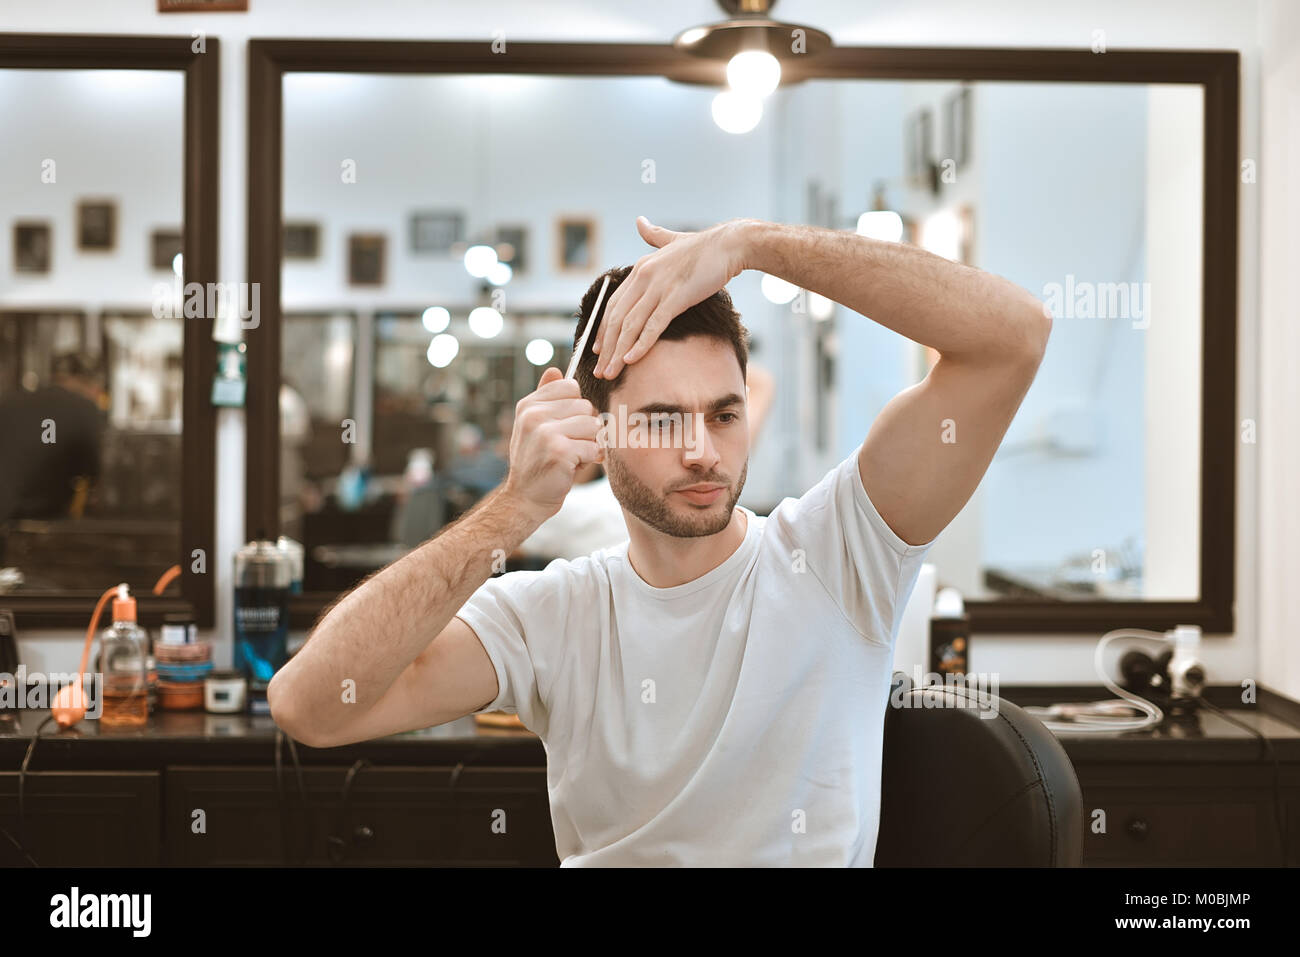 Processus de travail moderne dans un salon de barbier. Beau coiffure au service client, la mise en forme pour les clients masculins à l'aide d'un sèche-cheveux. Vue de côté portrait d'ATTRA Banque D'Images